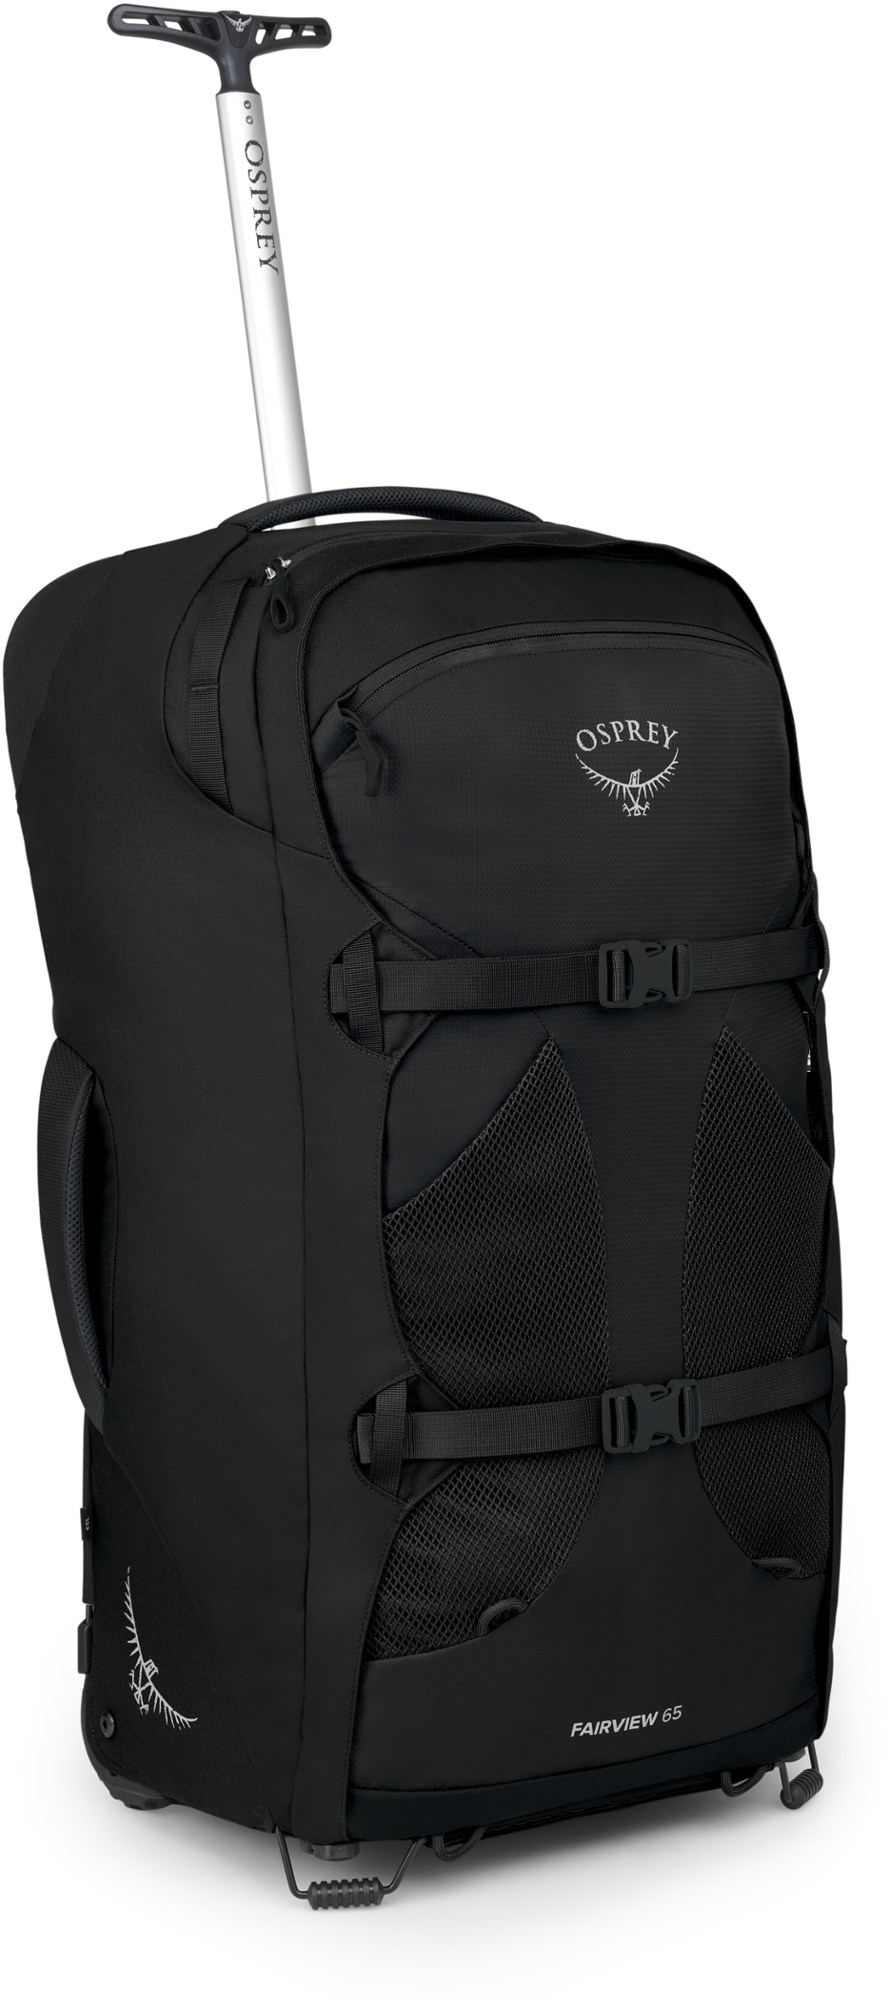 Дорожный рюкзак Fairview 65 на колесиках — женский Osprey, черный